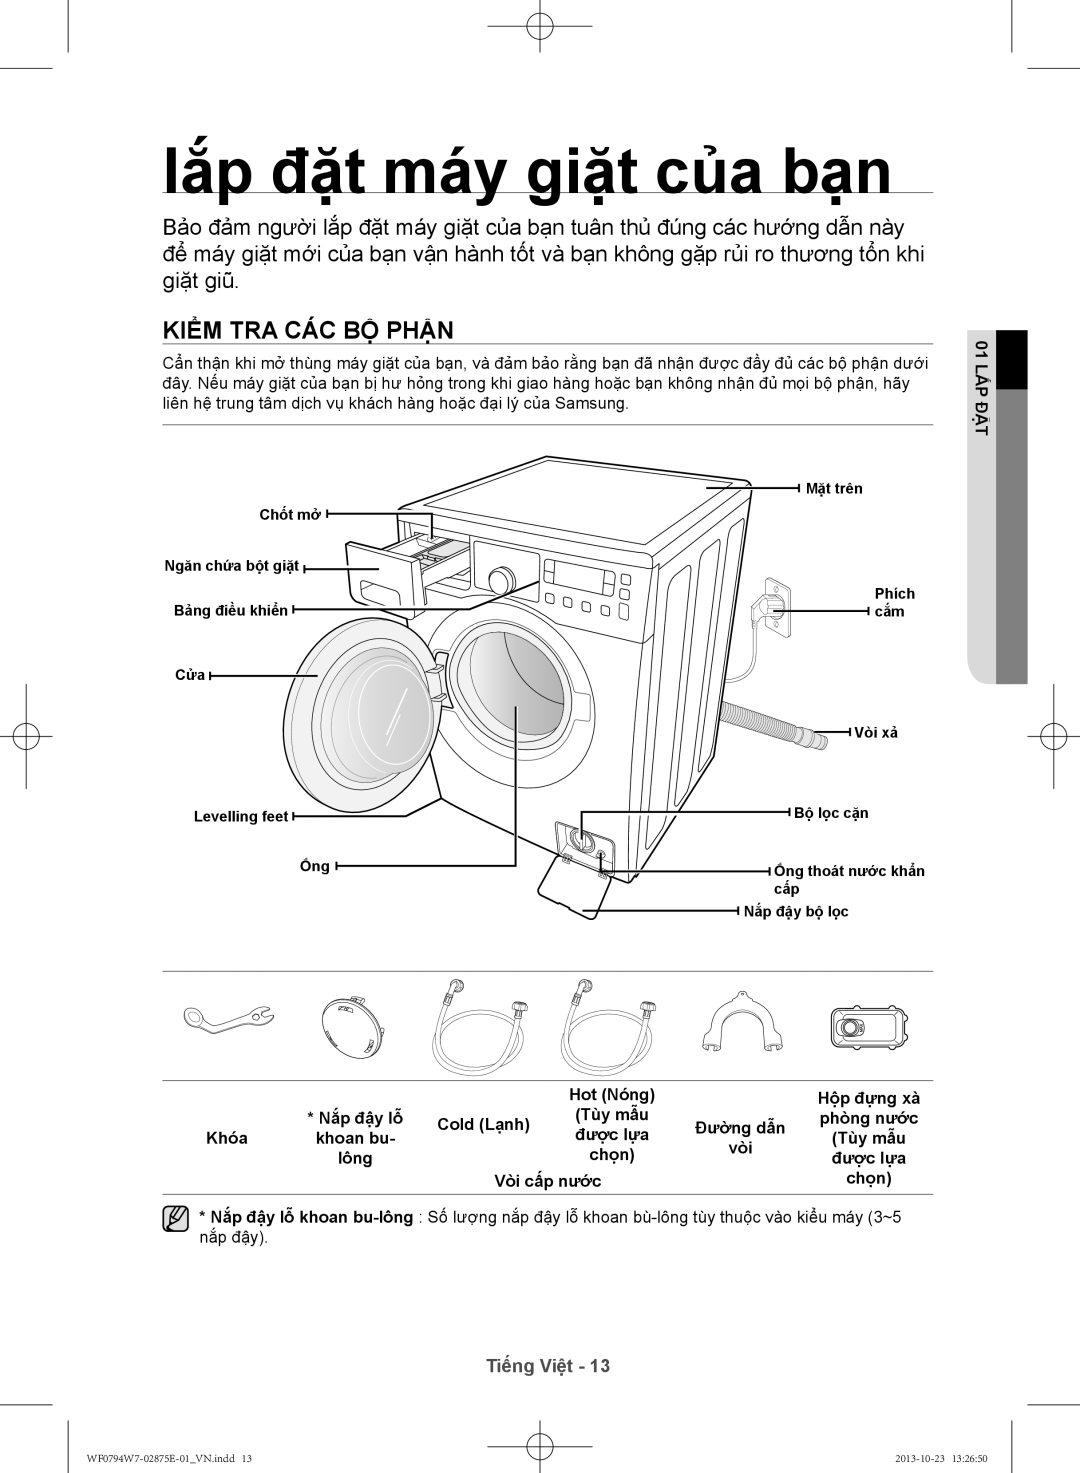 Samsung WF0794W7E9/XSV lắ́p đặt máy giặt của bạn, Kiểm tra các bộ phận, Tiếng Việt, 01 lắp đặt, Hot Nóng, Hộ̣p đựng xà 